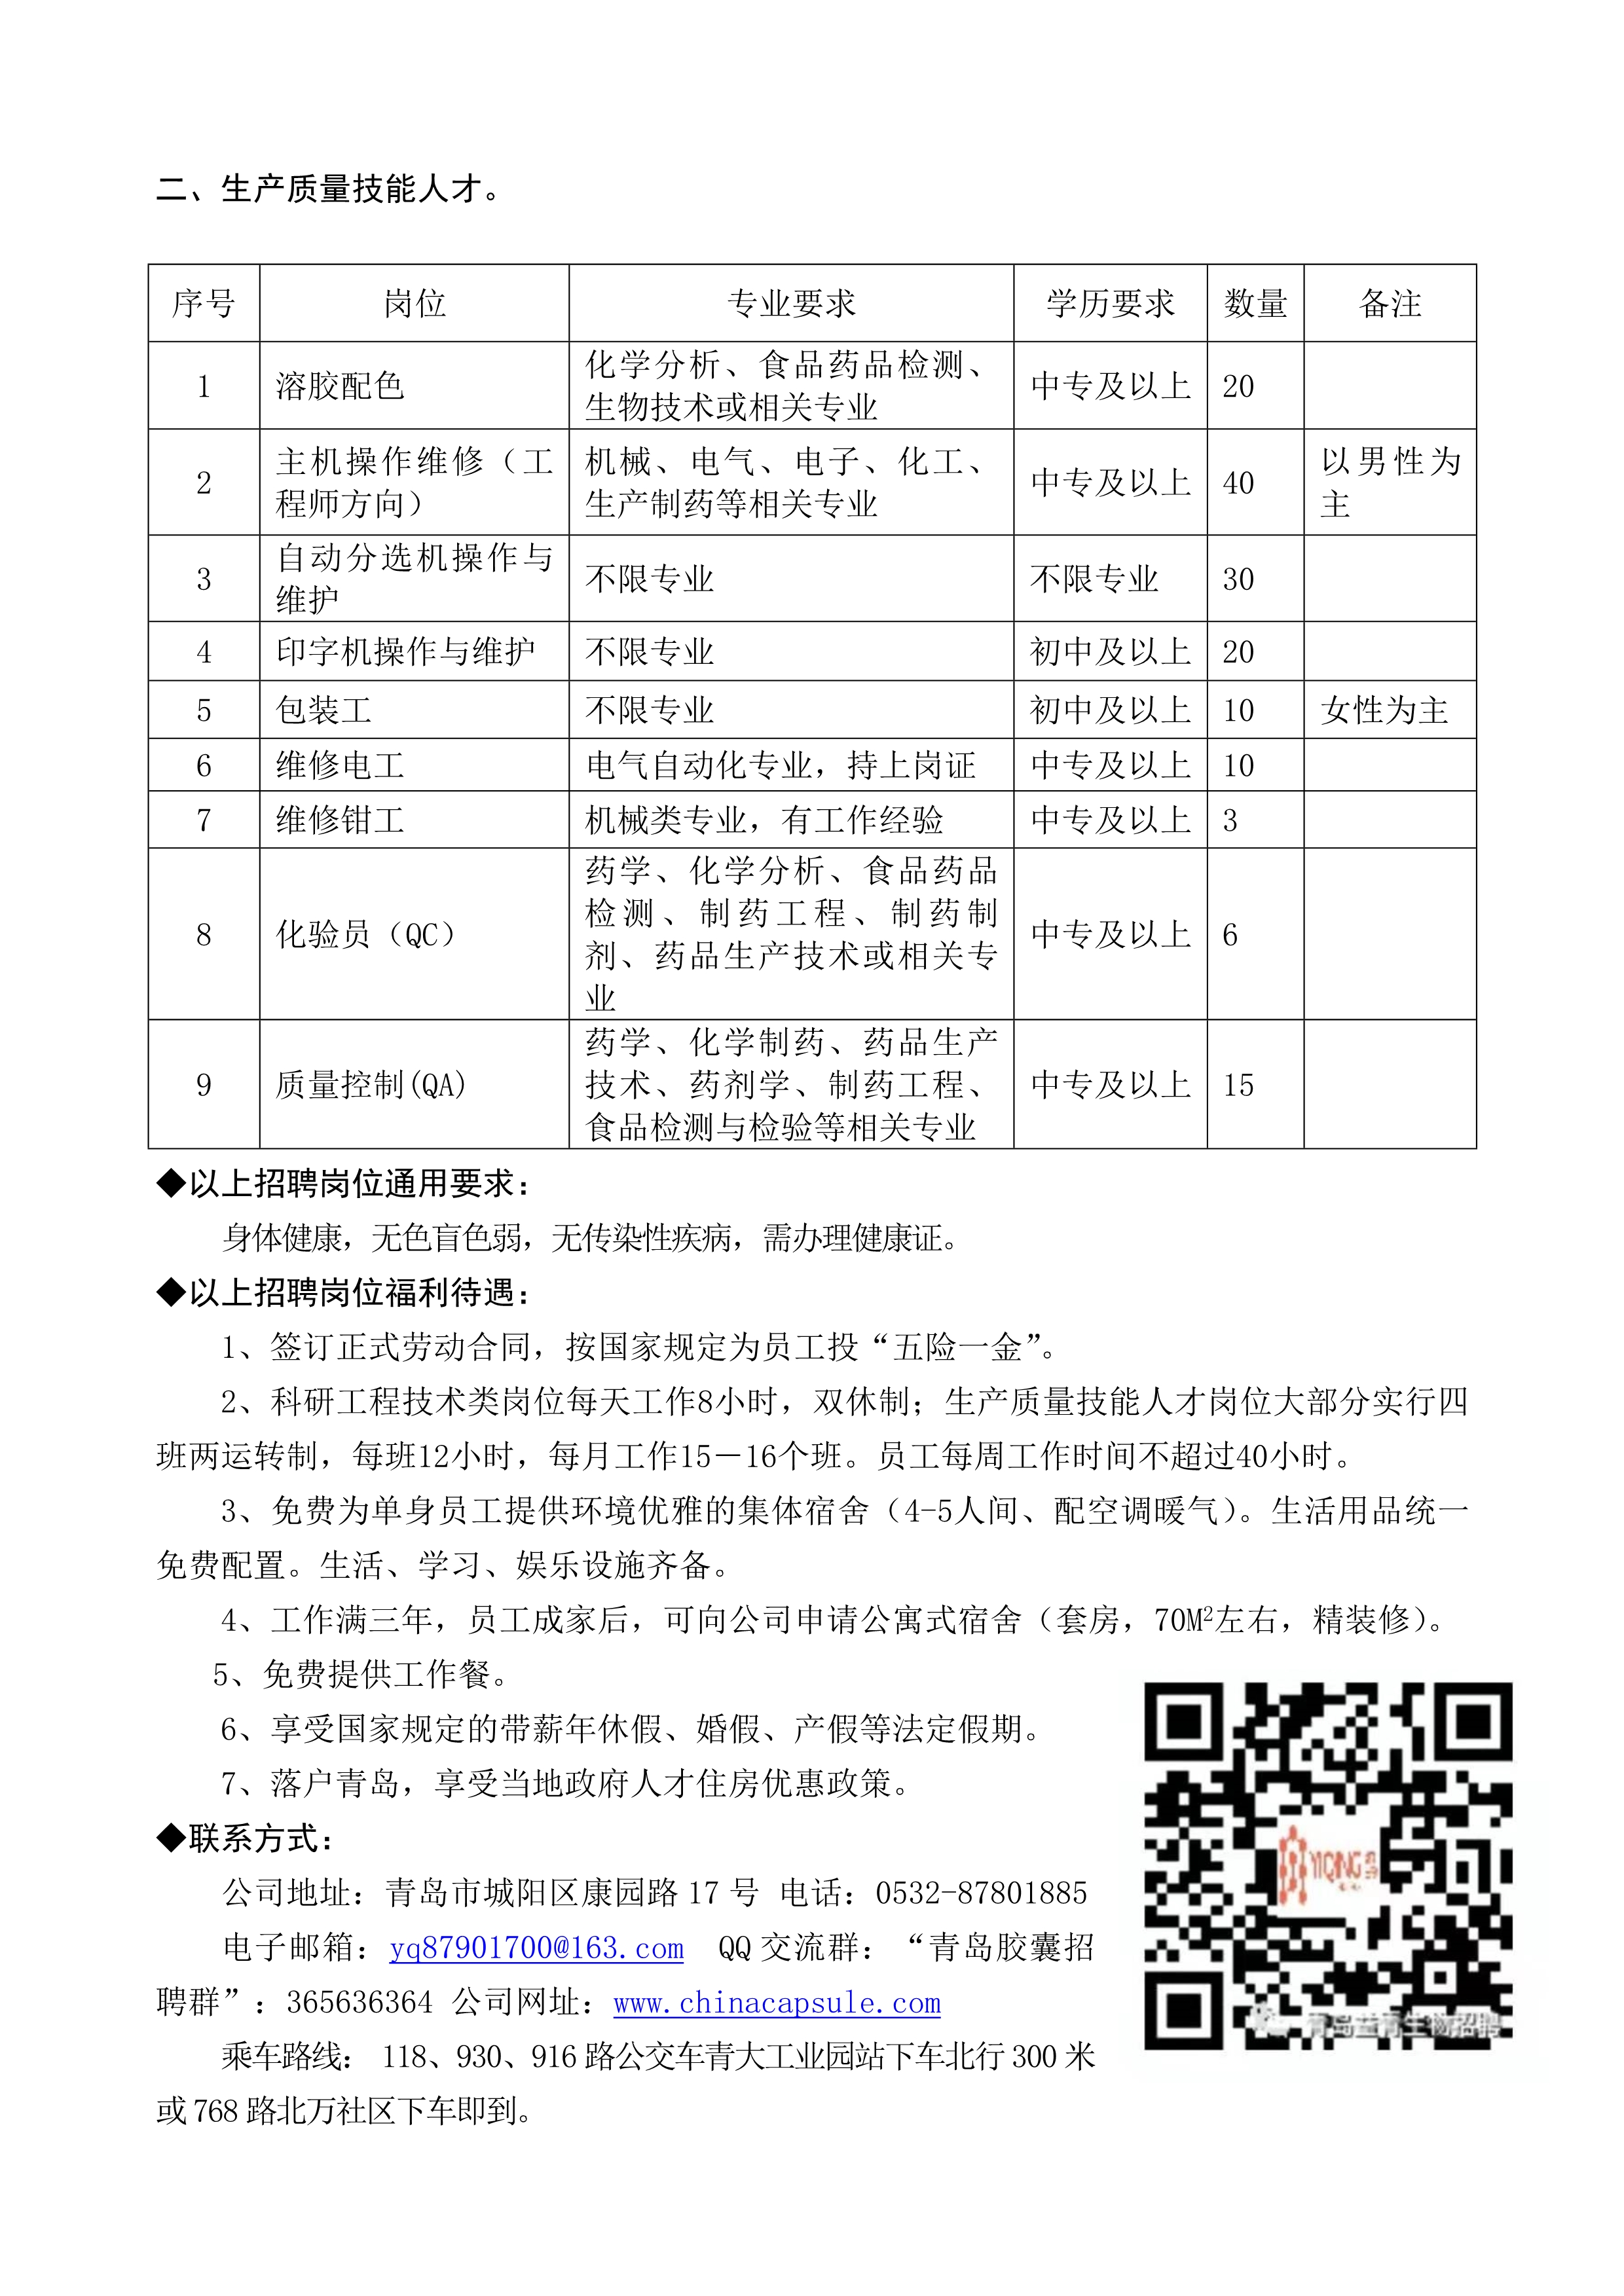 青岛益青生物科技股份有限公司2022年招聘简章_2.jpg